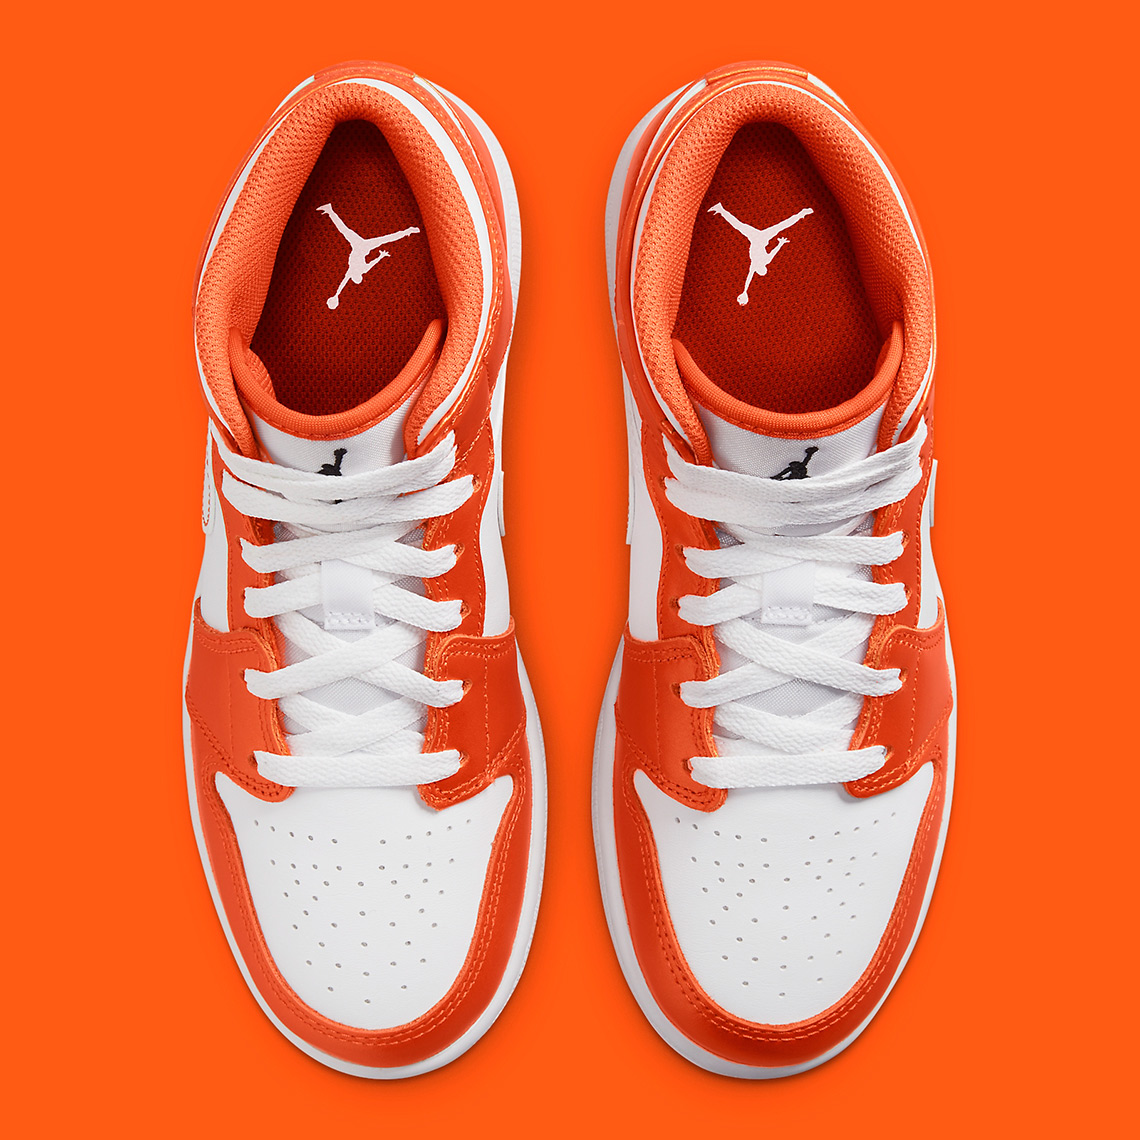 Air Jordan 1 Mid Metallic Orange DM4228-800 | SneakerNews.com